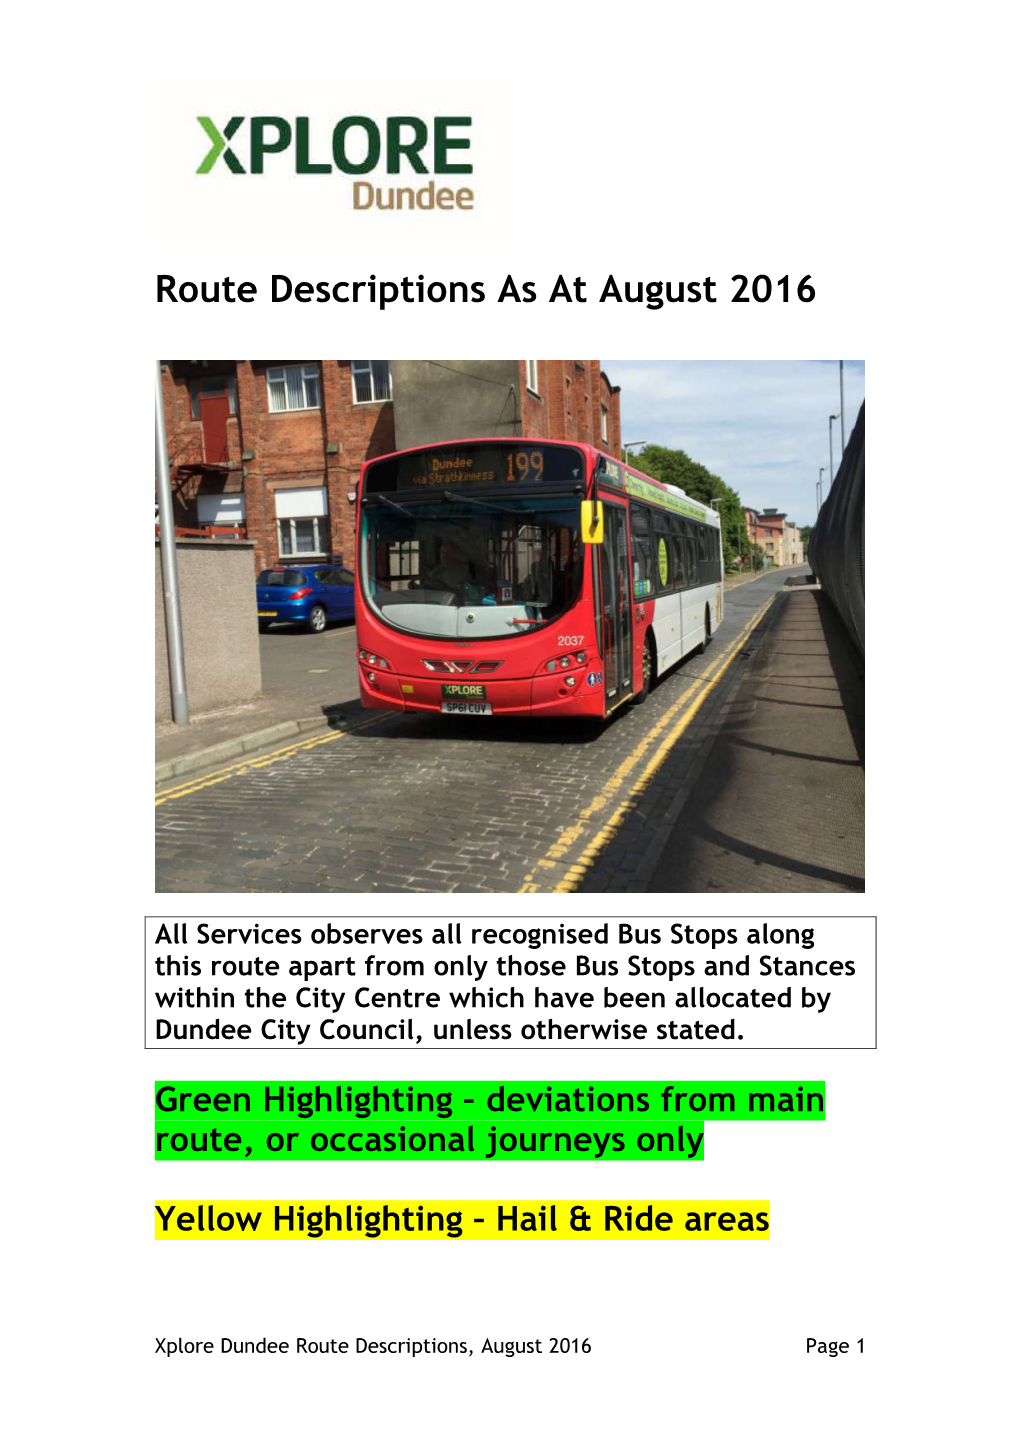 Route Descriptions As at August 2016